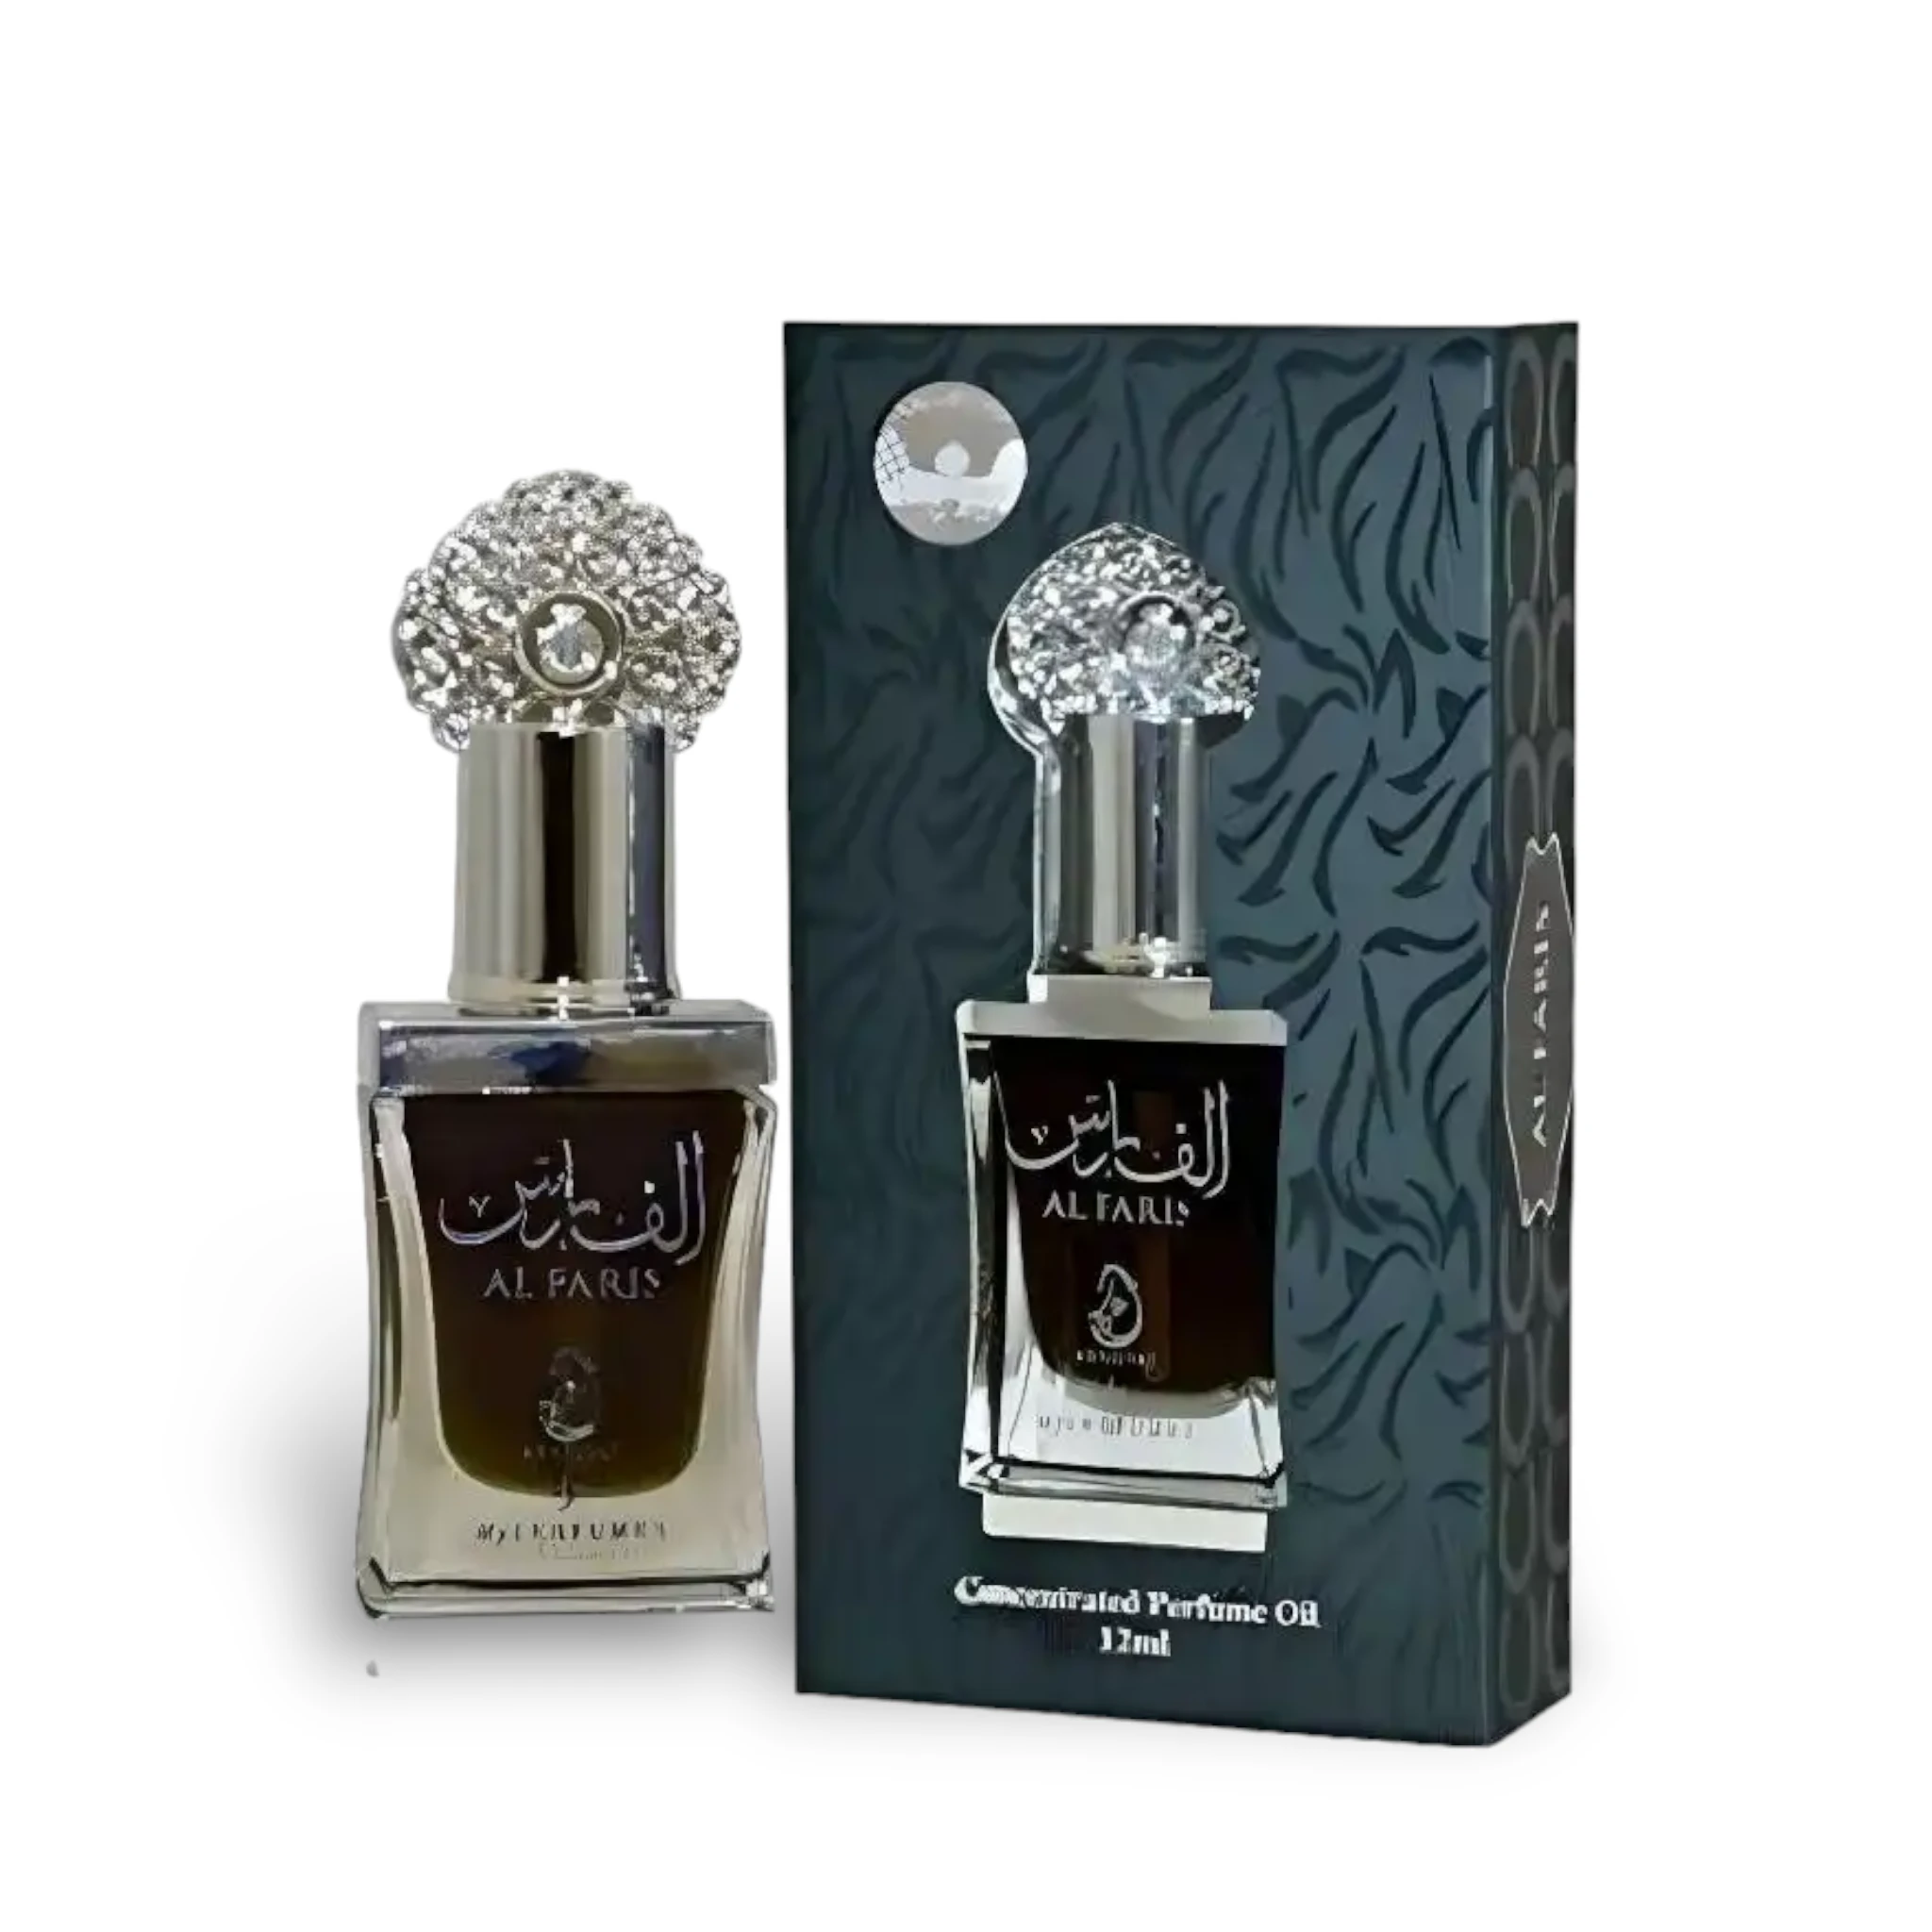 Al Faris Concentrated Perfume Oil Attar 12Ml By My Perfumes (Arabiyat Prestige)